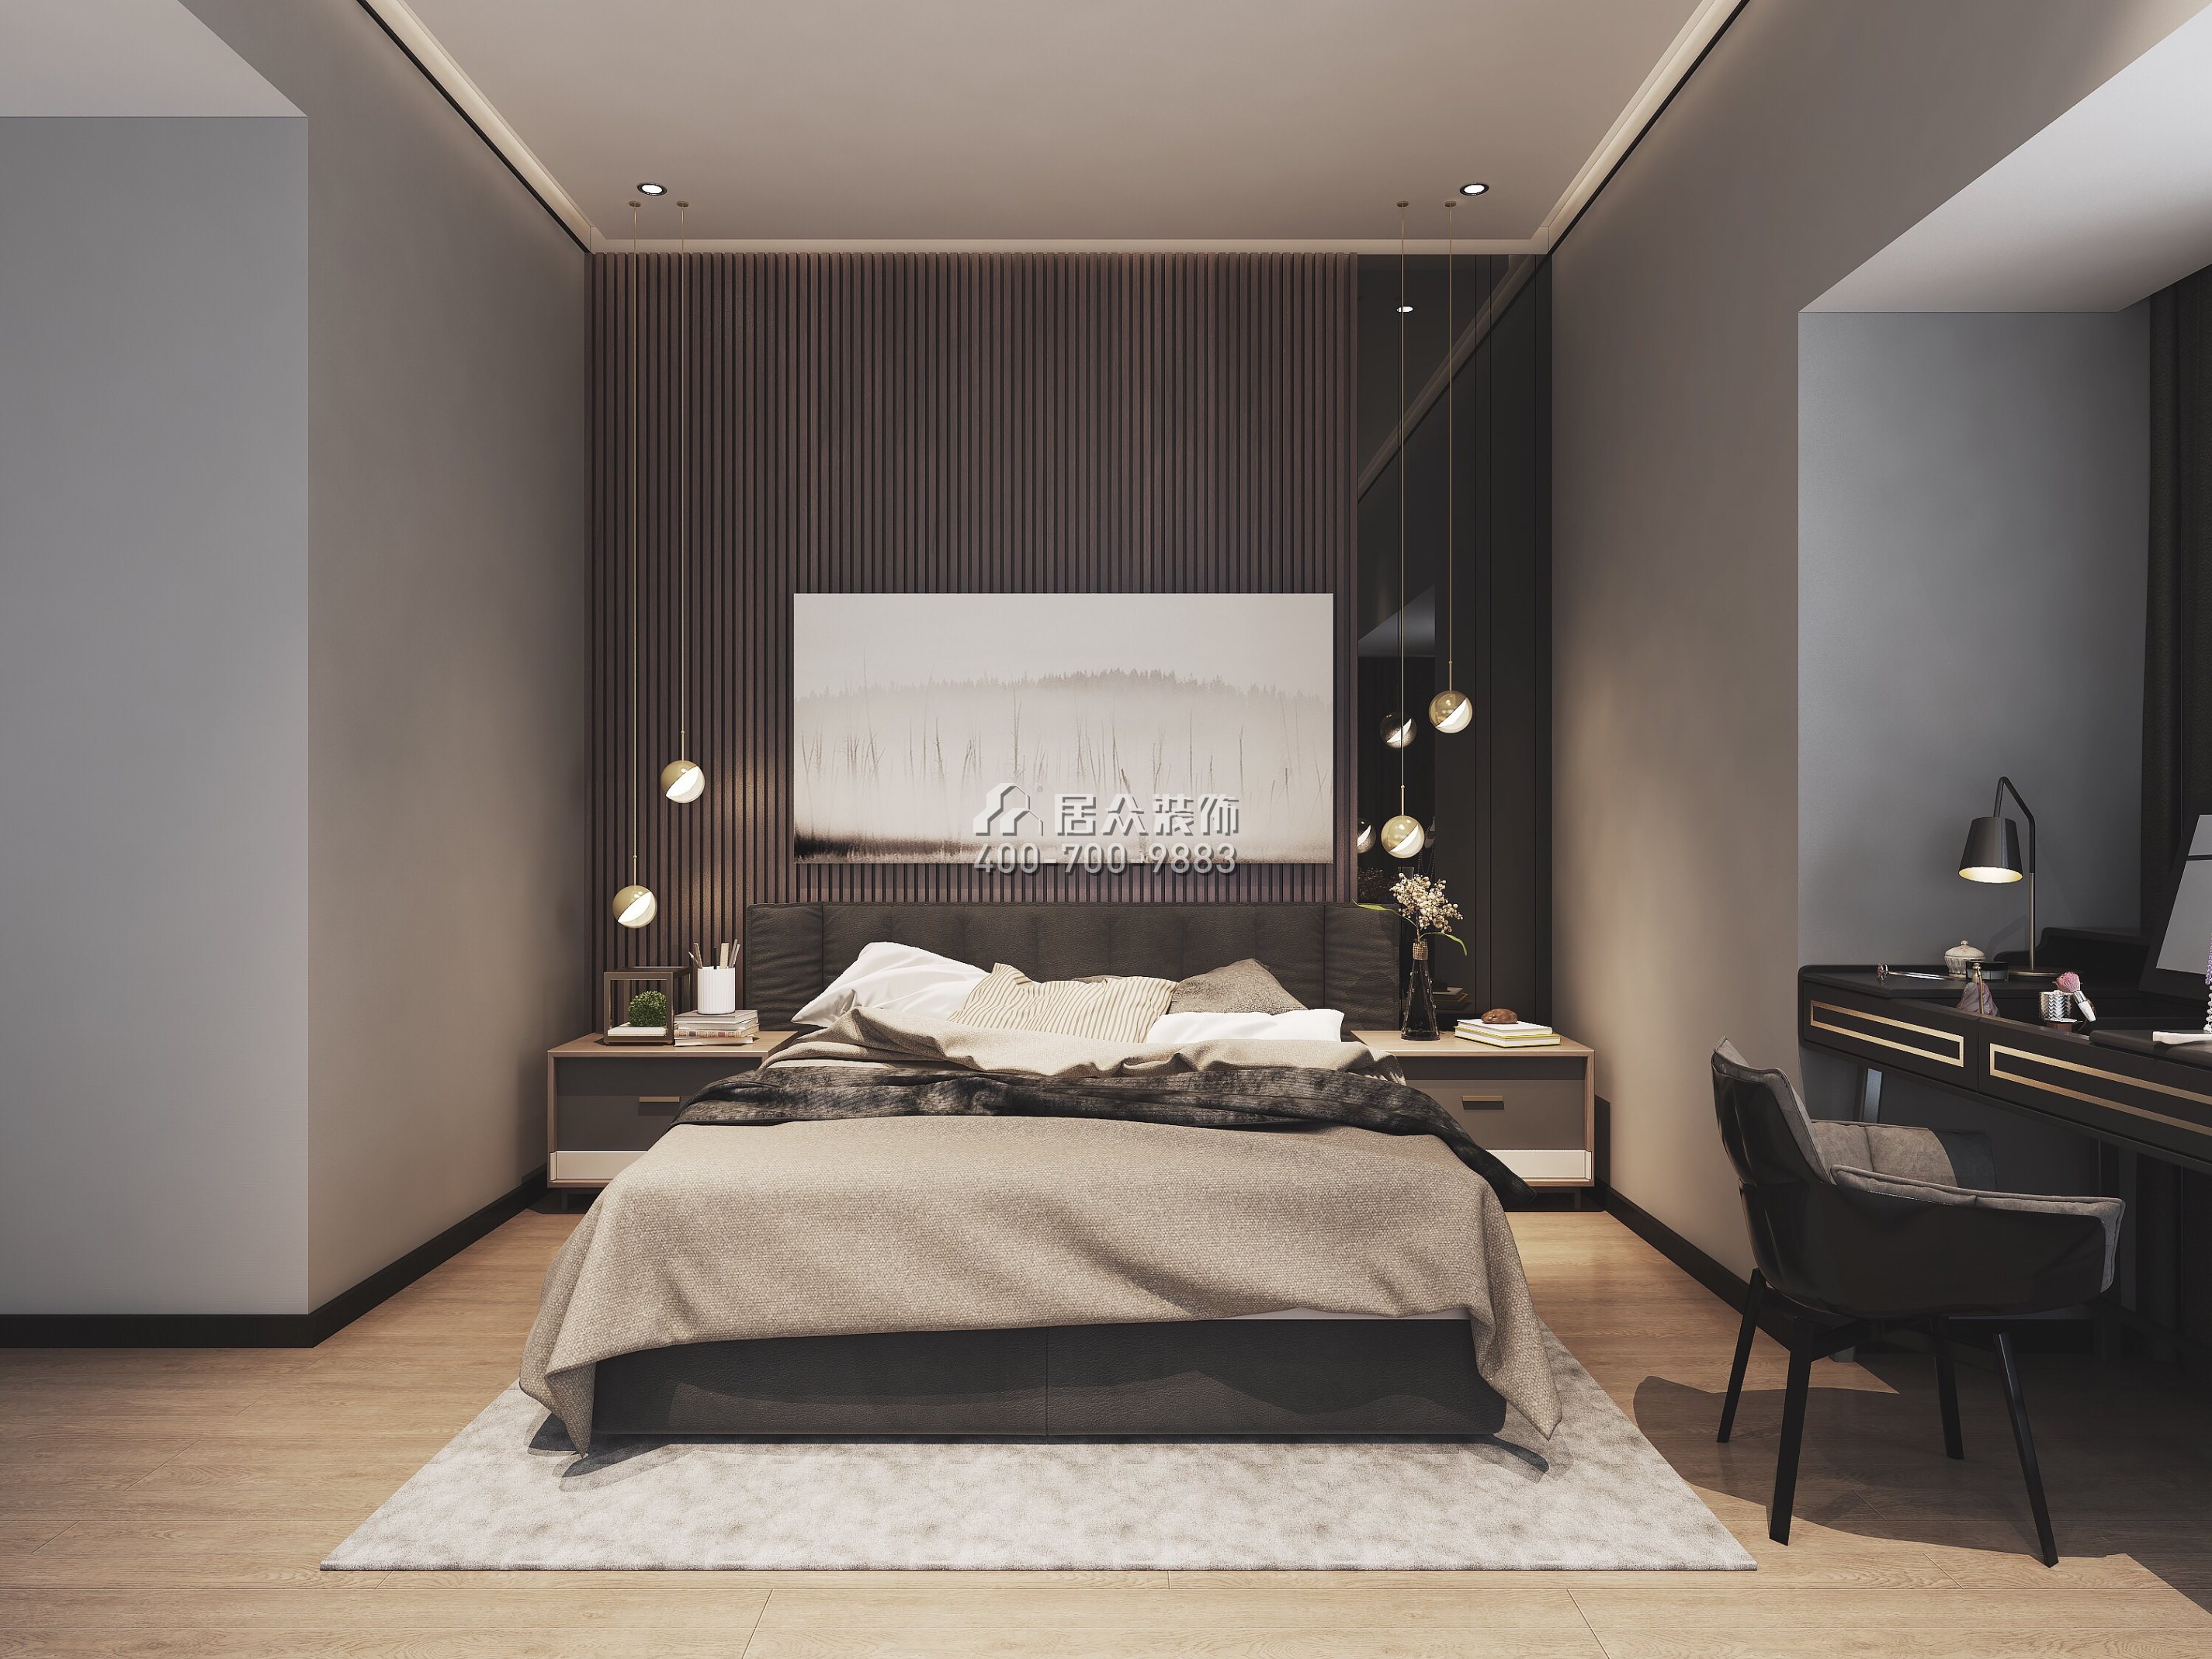 豪方天际78平方米现代简约风格平层户型卧室装修效果图